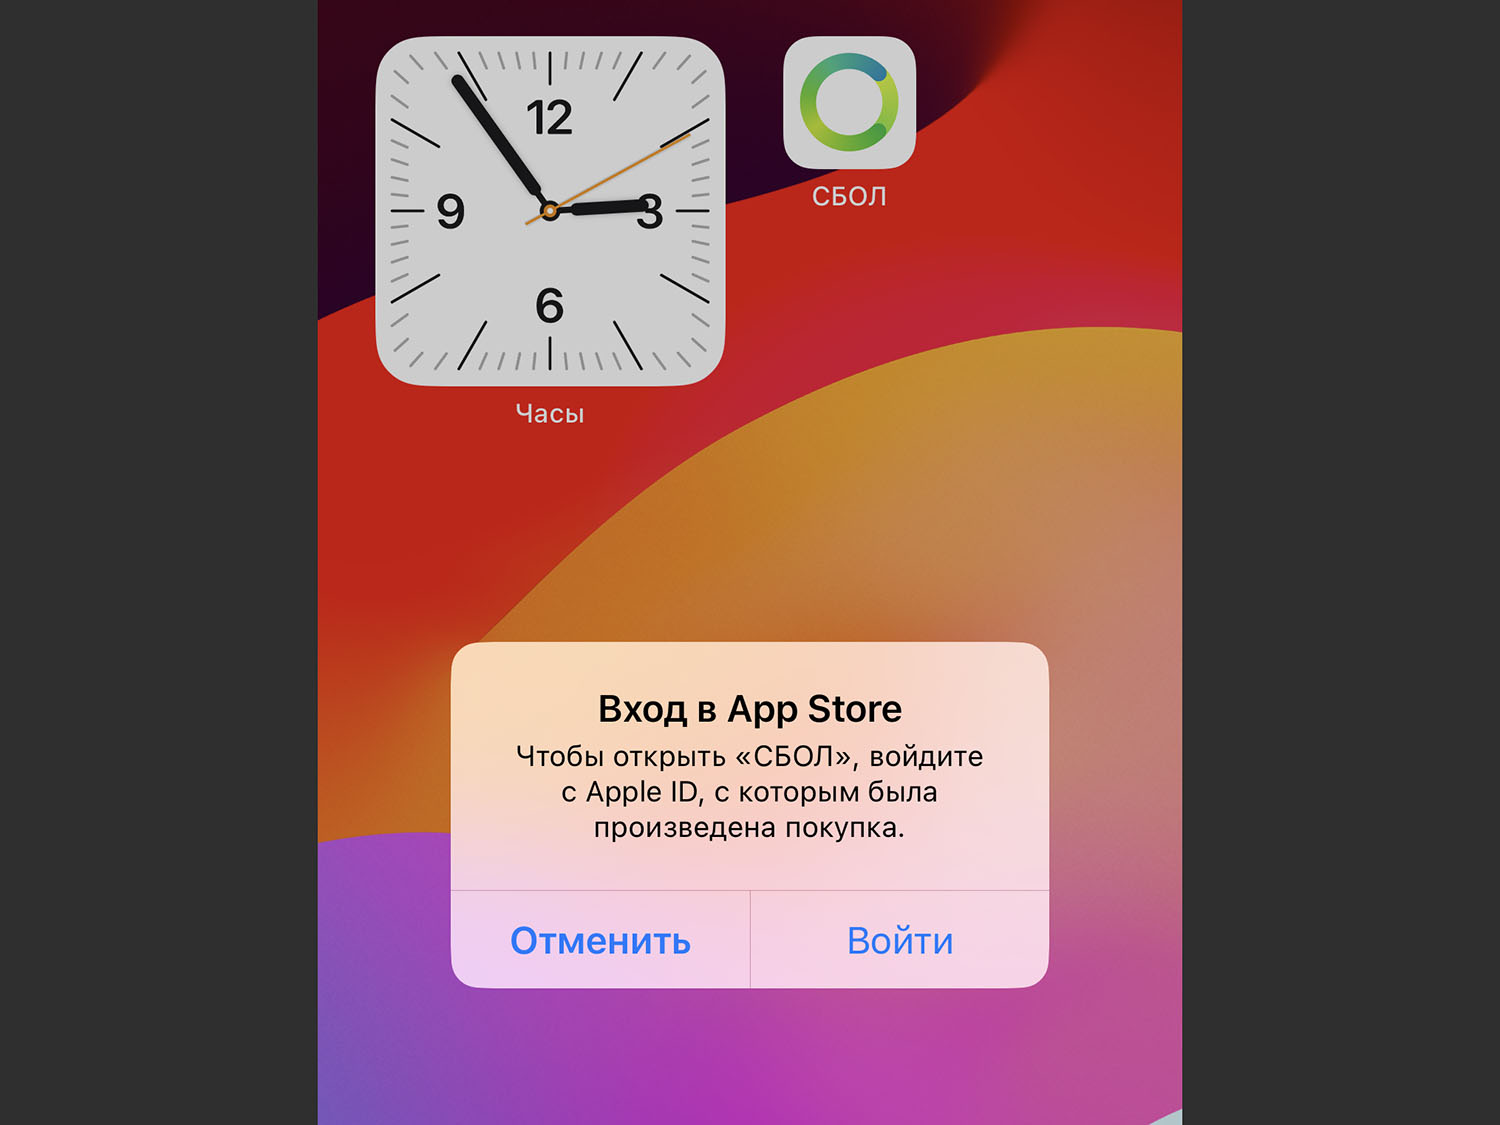 Как устанавливать приложения на iPhone в обход App Store. Это новая опция iOS 17.1